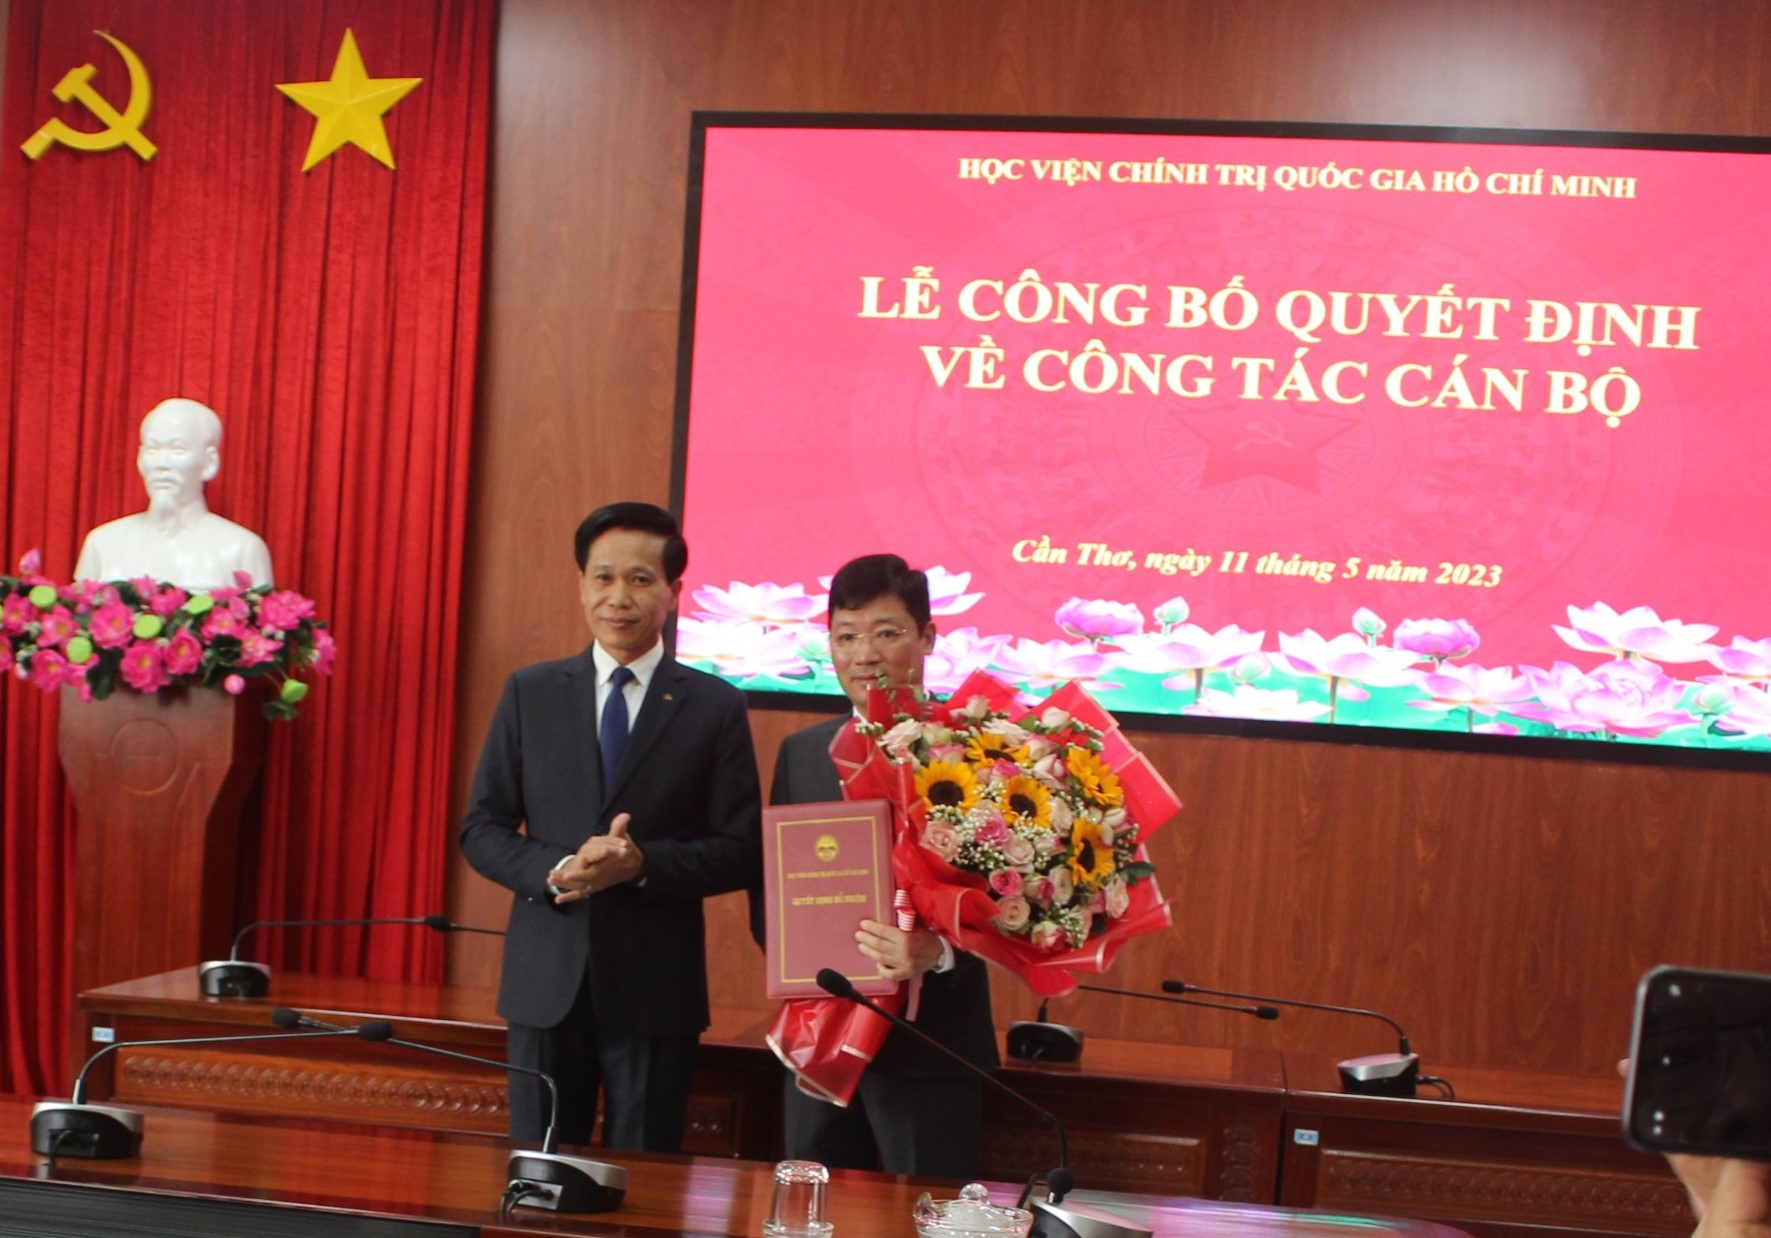 PGS.TS Nguyễn Xuân Phong giữ chức vụ Phó Giám đốc Học viện Chính trị khu vực IV